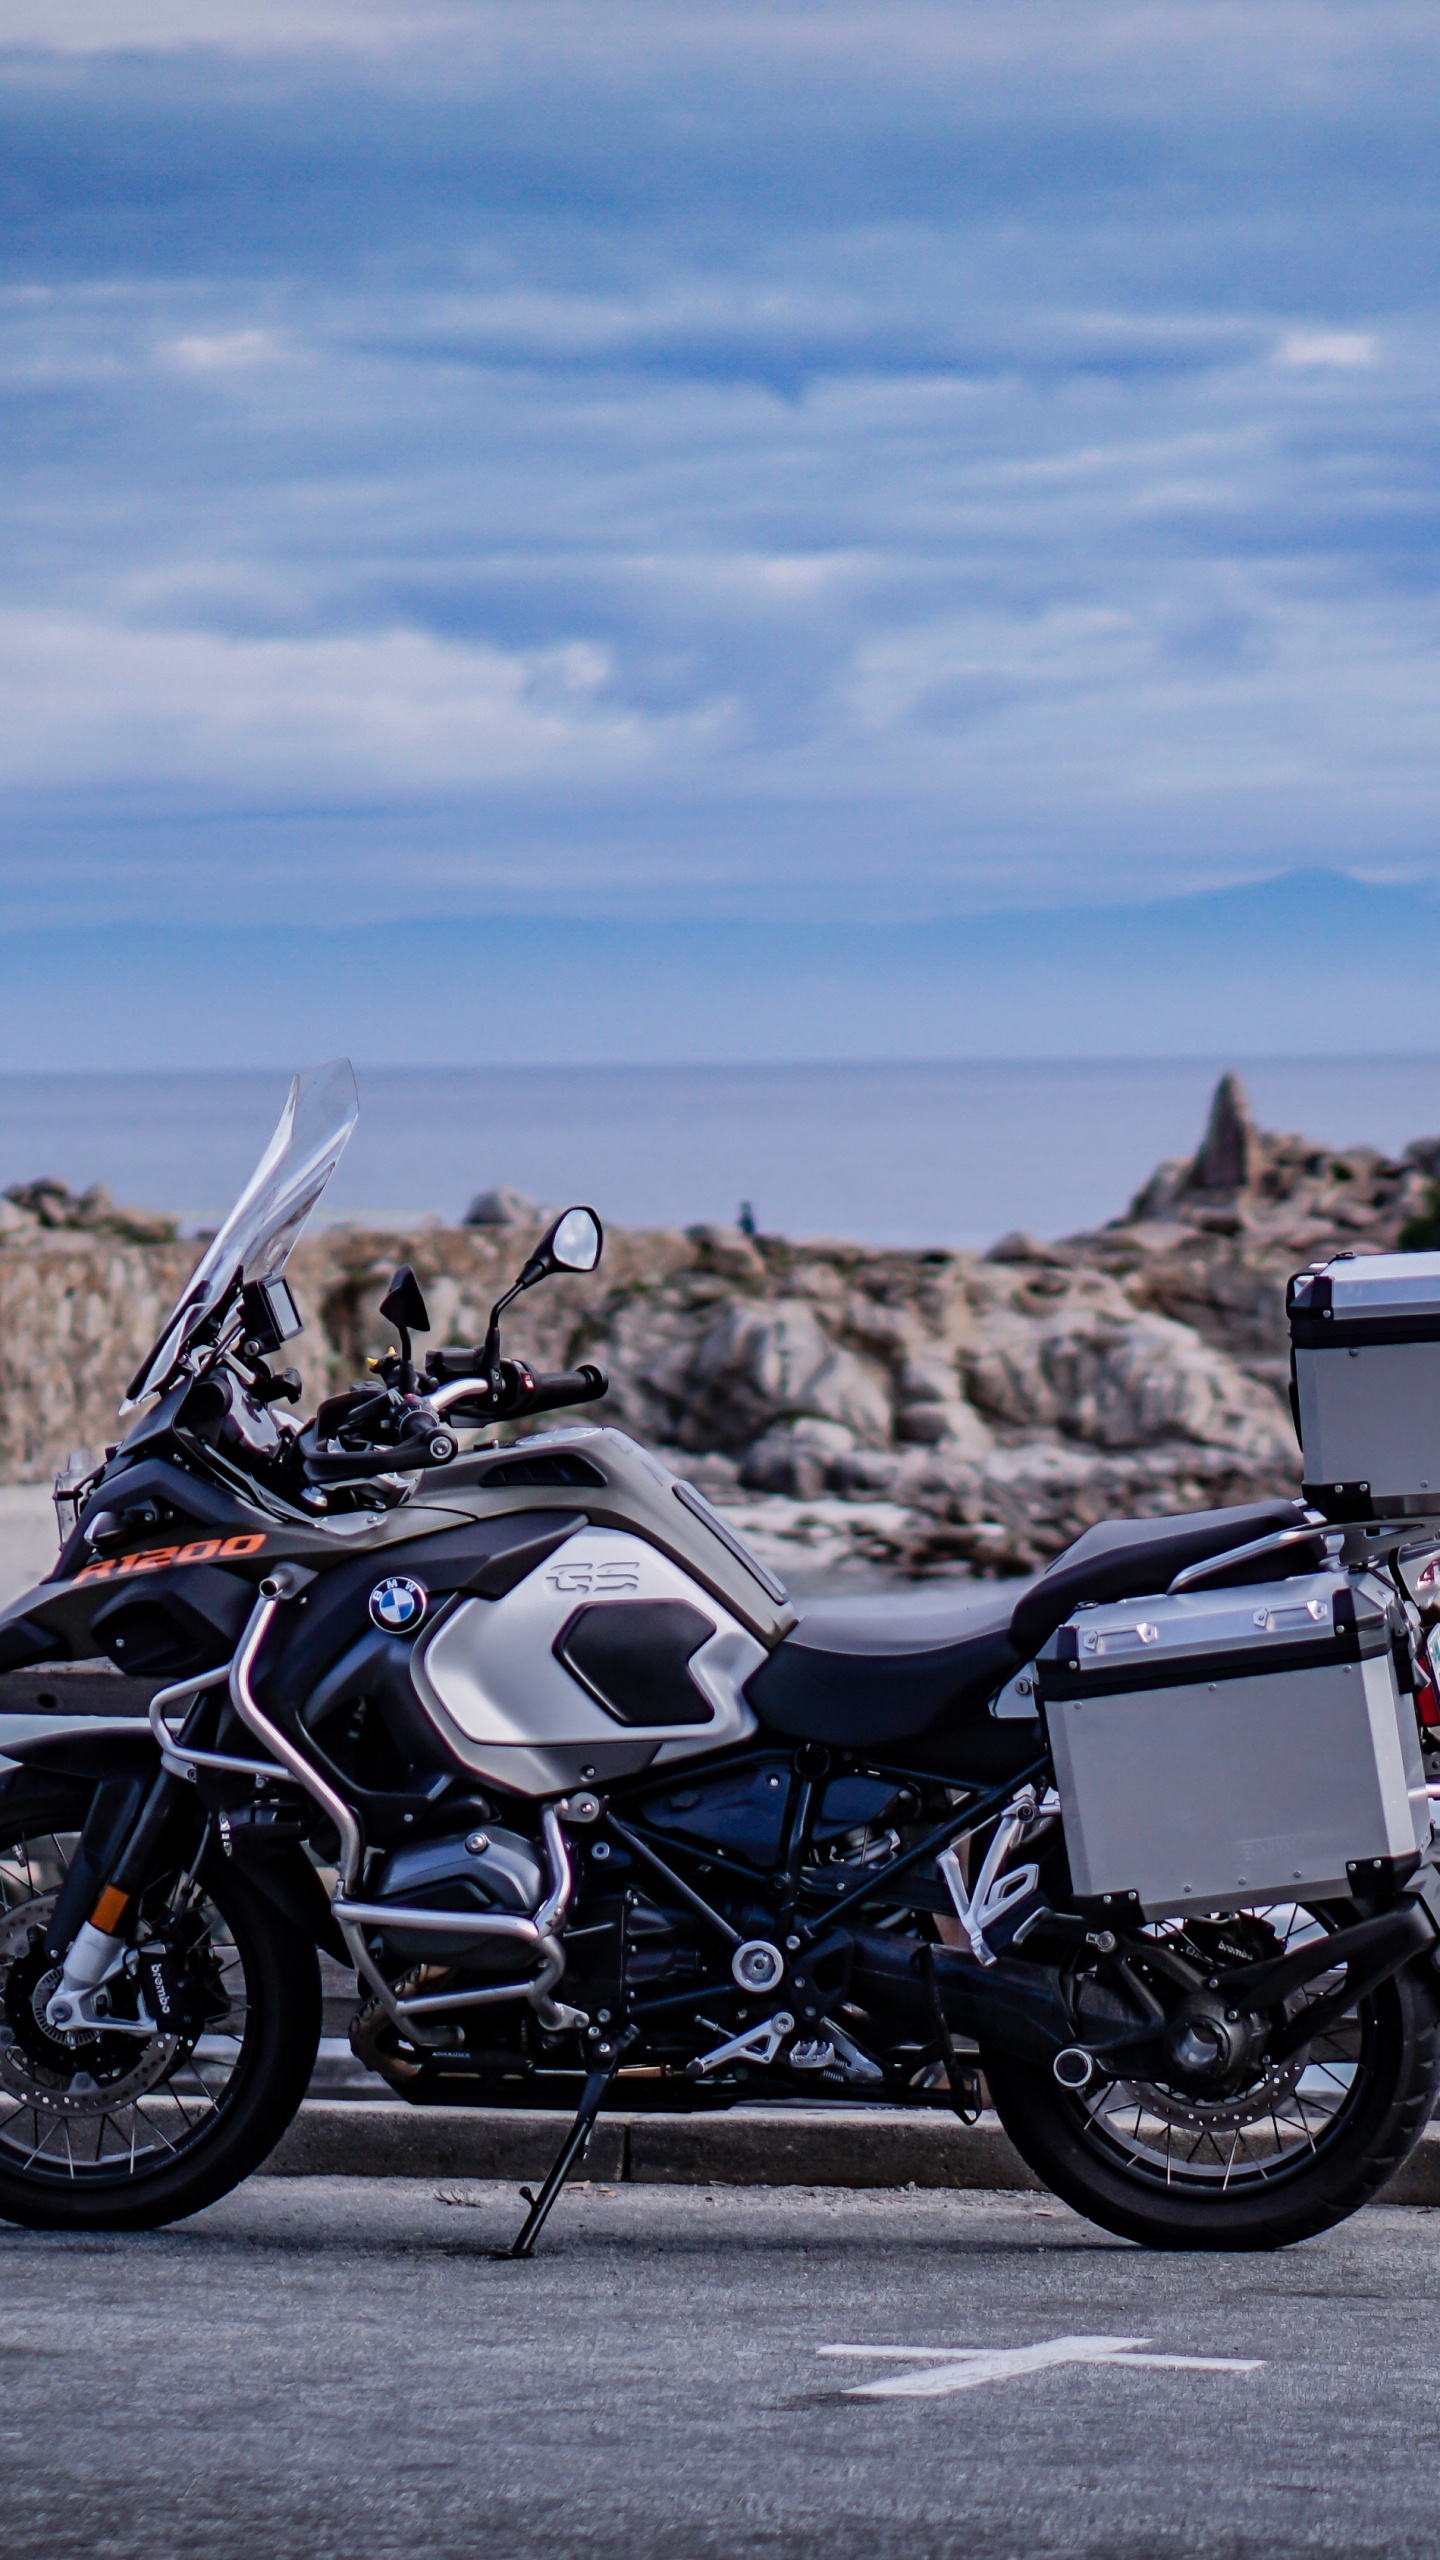 Motocicleta Negra y Plateada Estacionada en un Muelle de Madera Marrón Durante el Día. Wallpaper in 1440x2560 Resolution